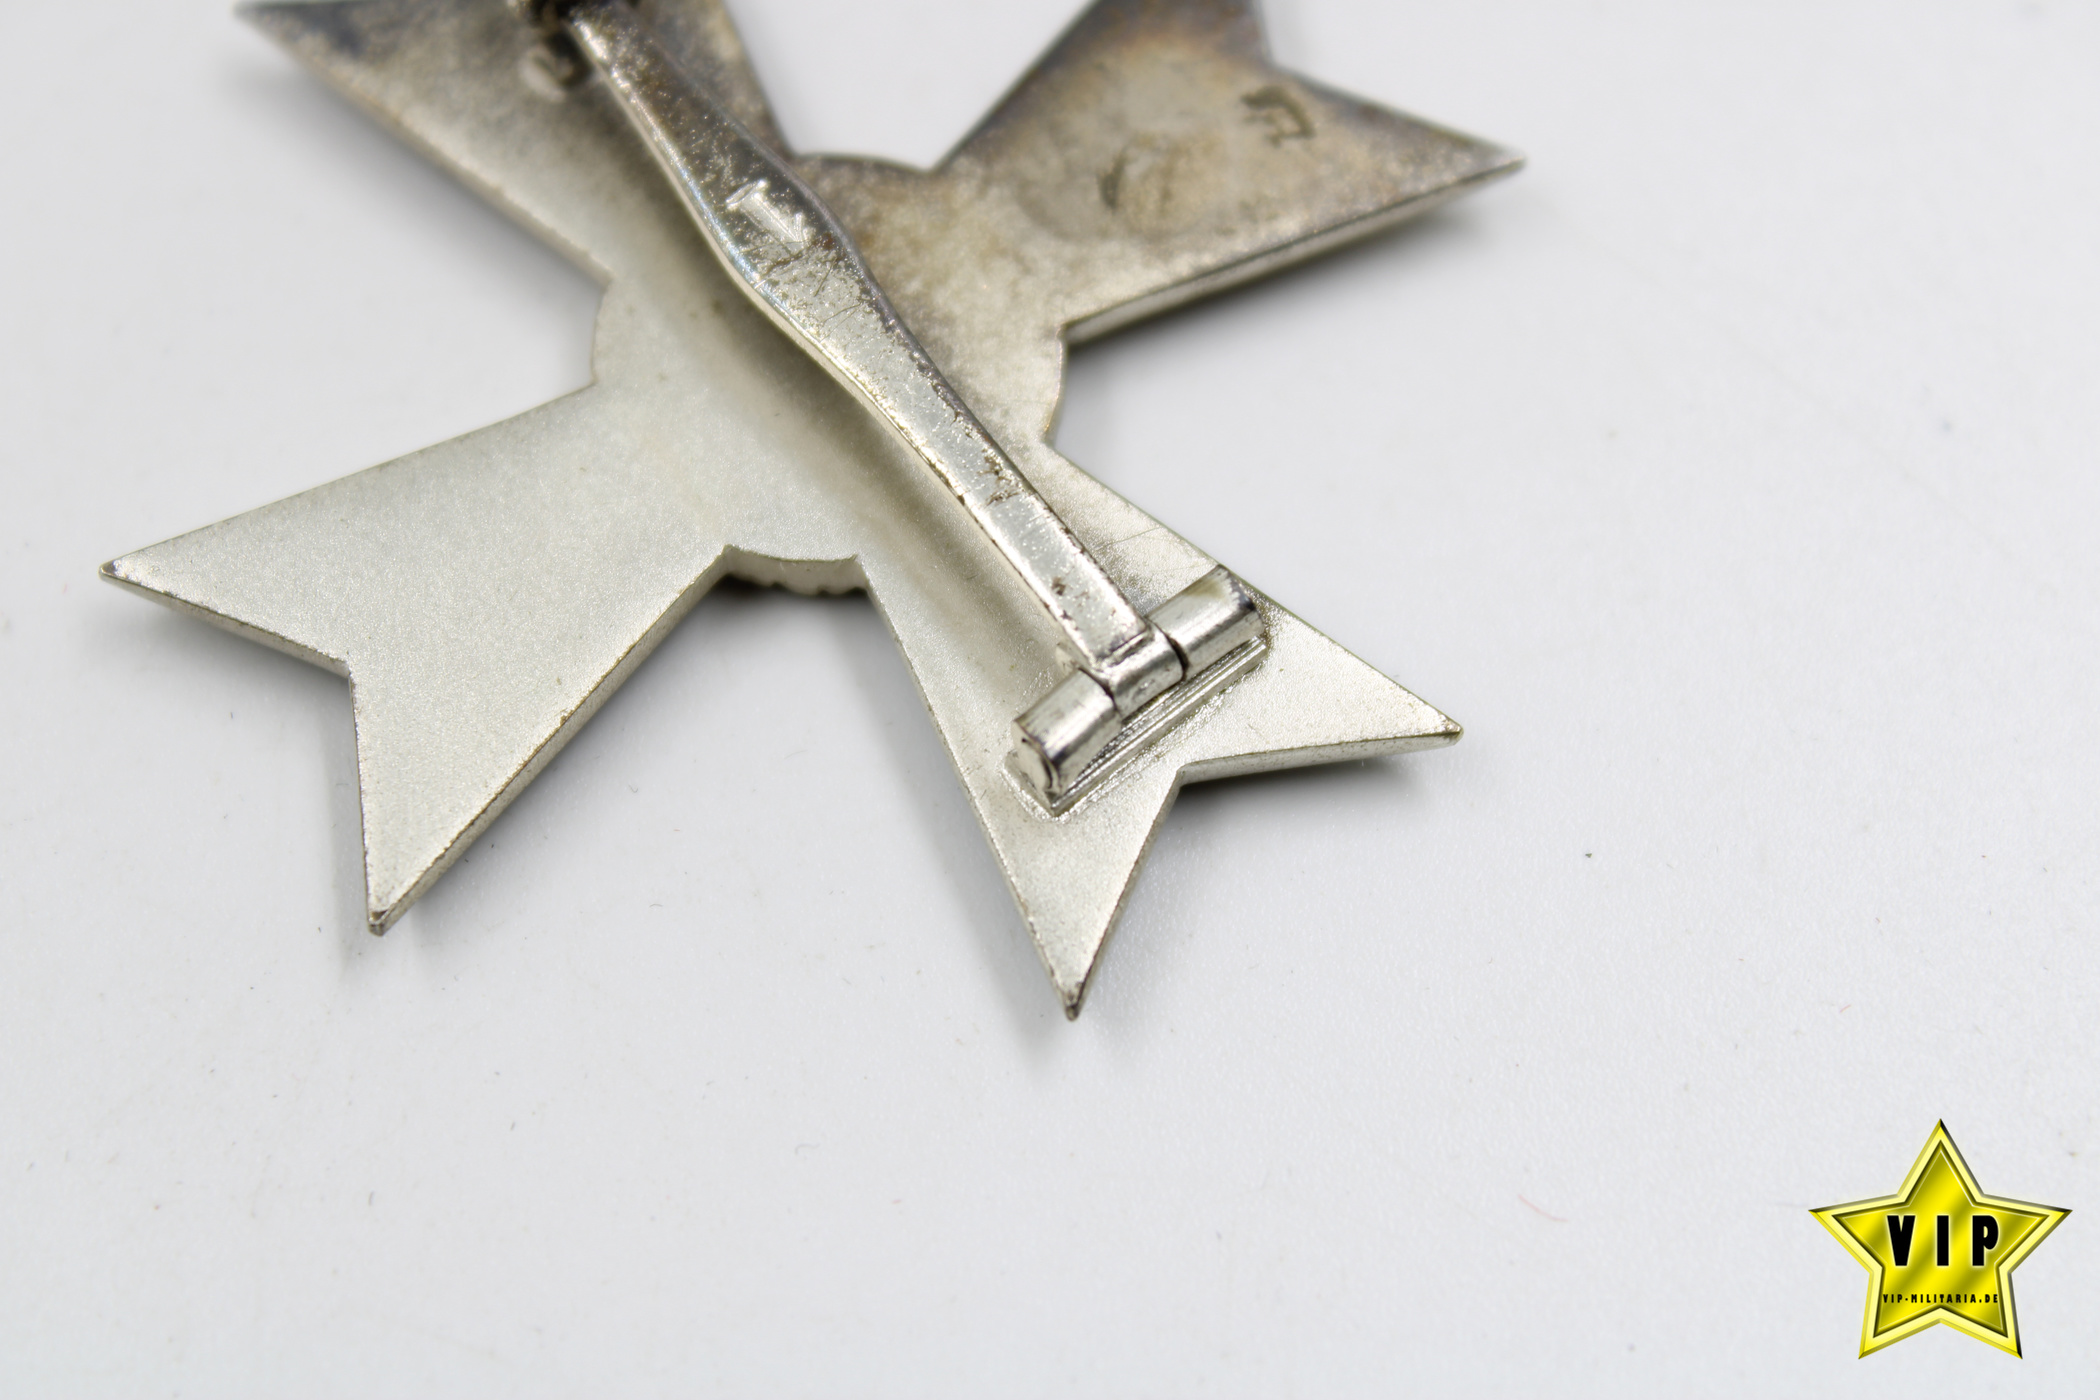 Kriegsverdienstkreuz 1. Klasse ohne Schwerter im Etui + Umkarton Hersteller 1 Deschler & Sohn, München + Miniatur